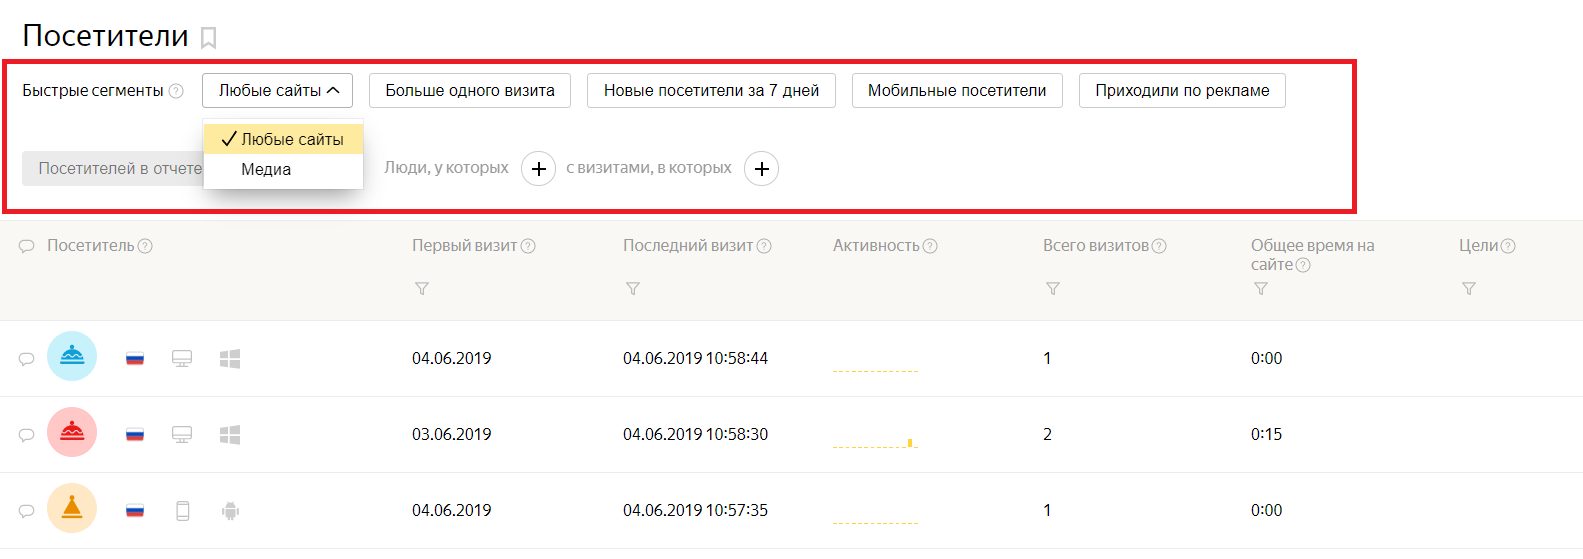 Сколько посетителей в день на сайте. Сегменты Яндекса.